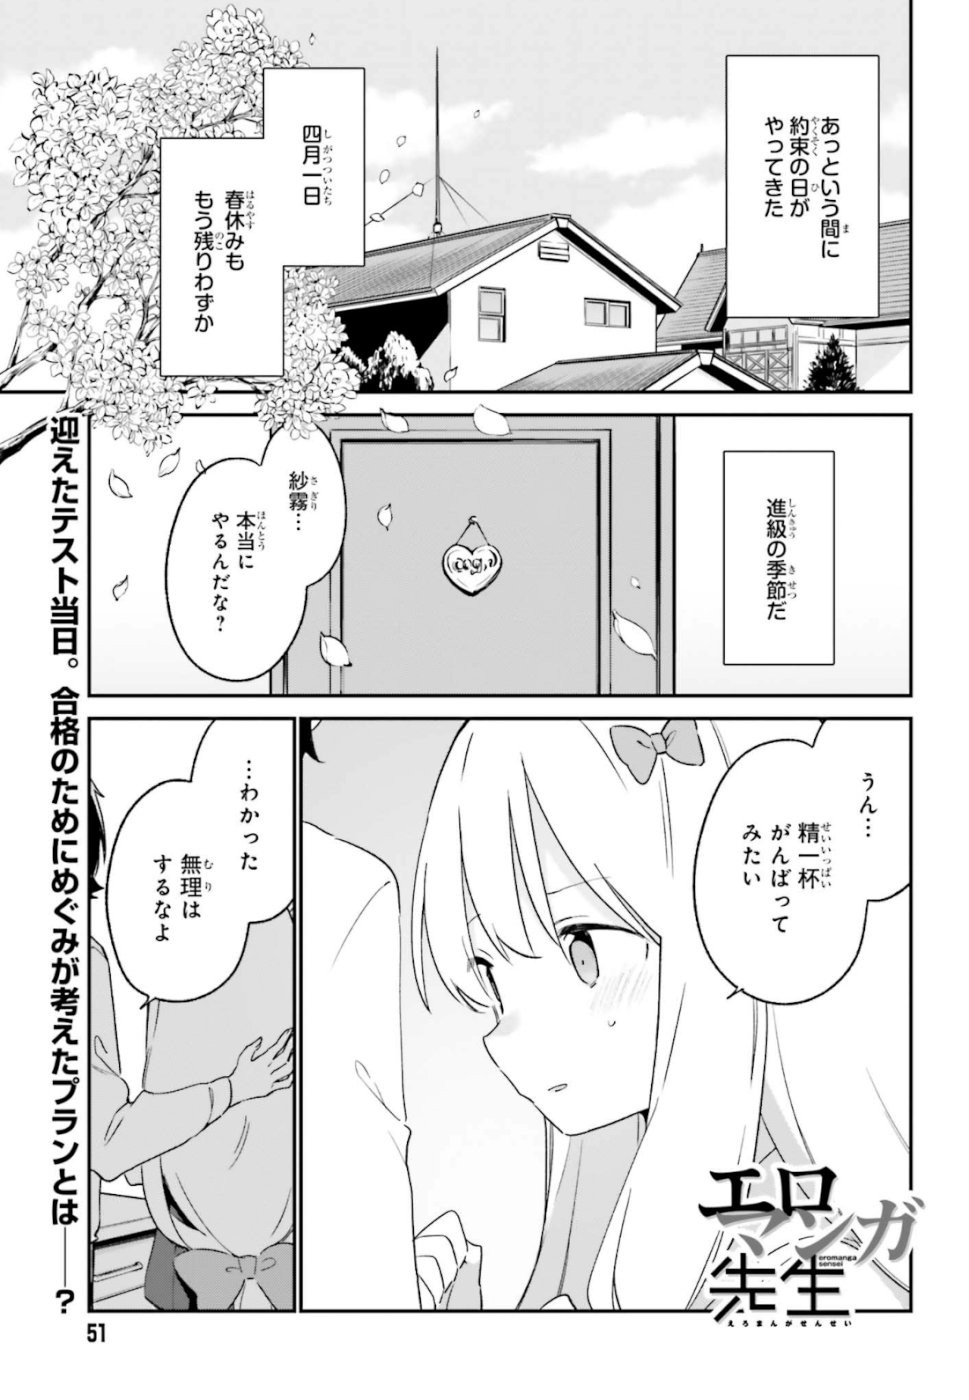 Ero Manga Sensei - Chapter 63 - Page 1